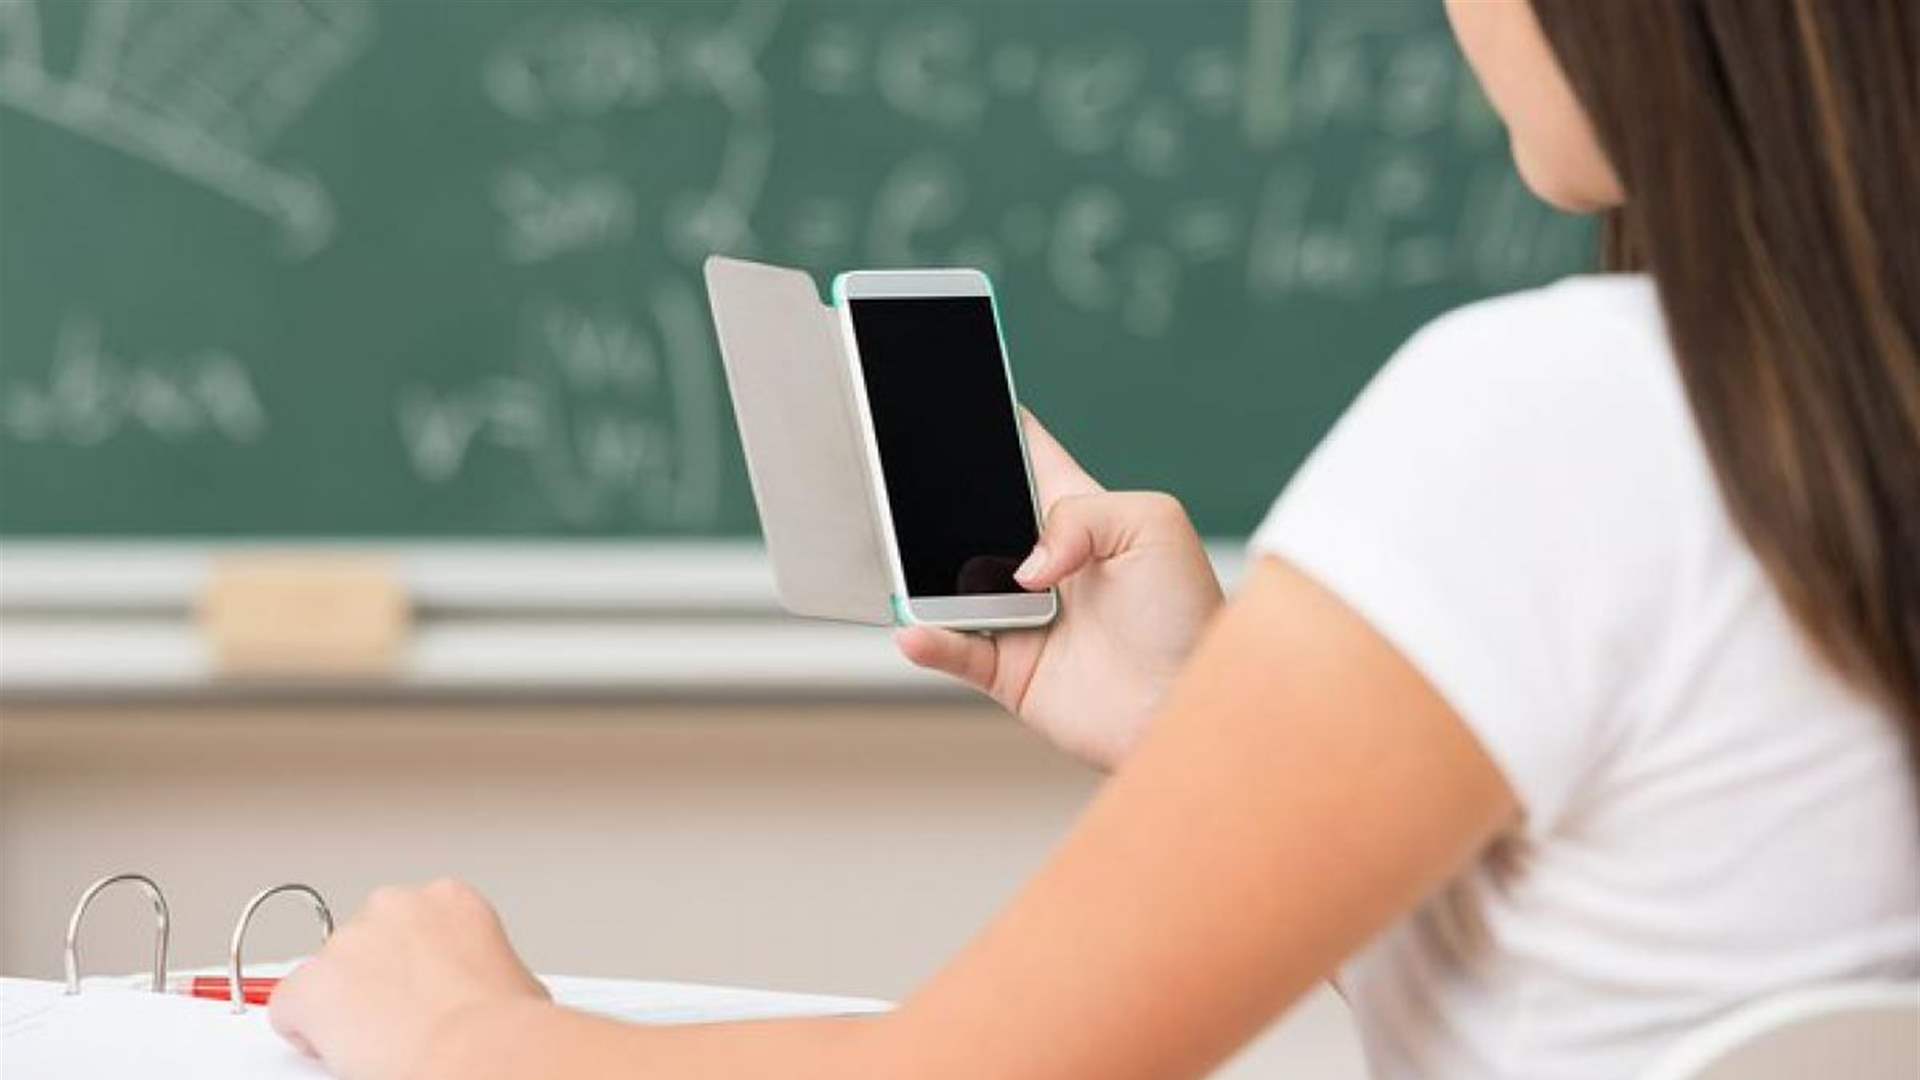 لوس أنجلوس تعتزم منع استخدام الهواتف الذكية في المدارس